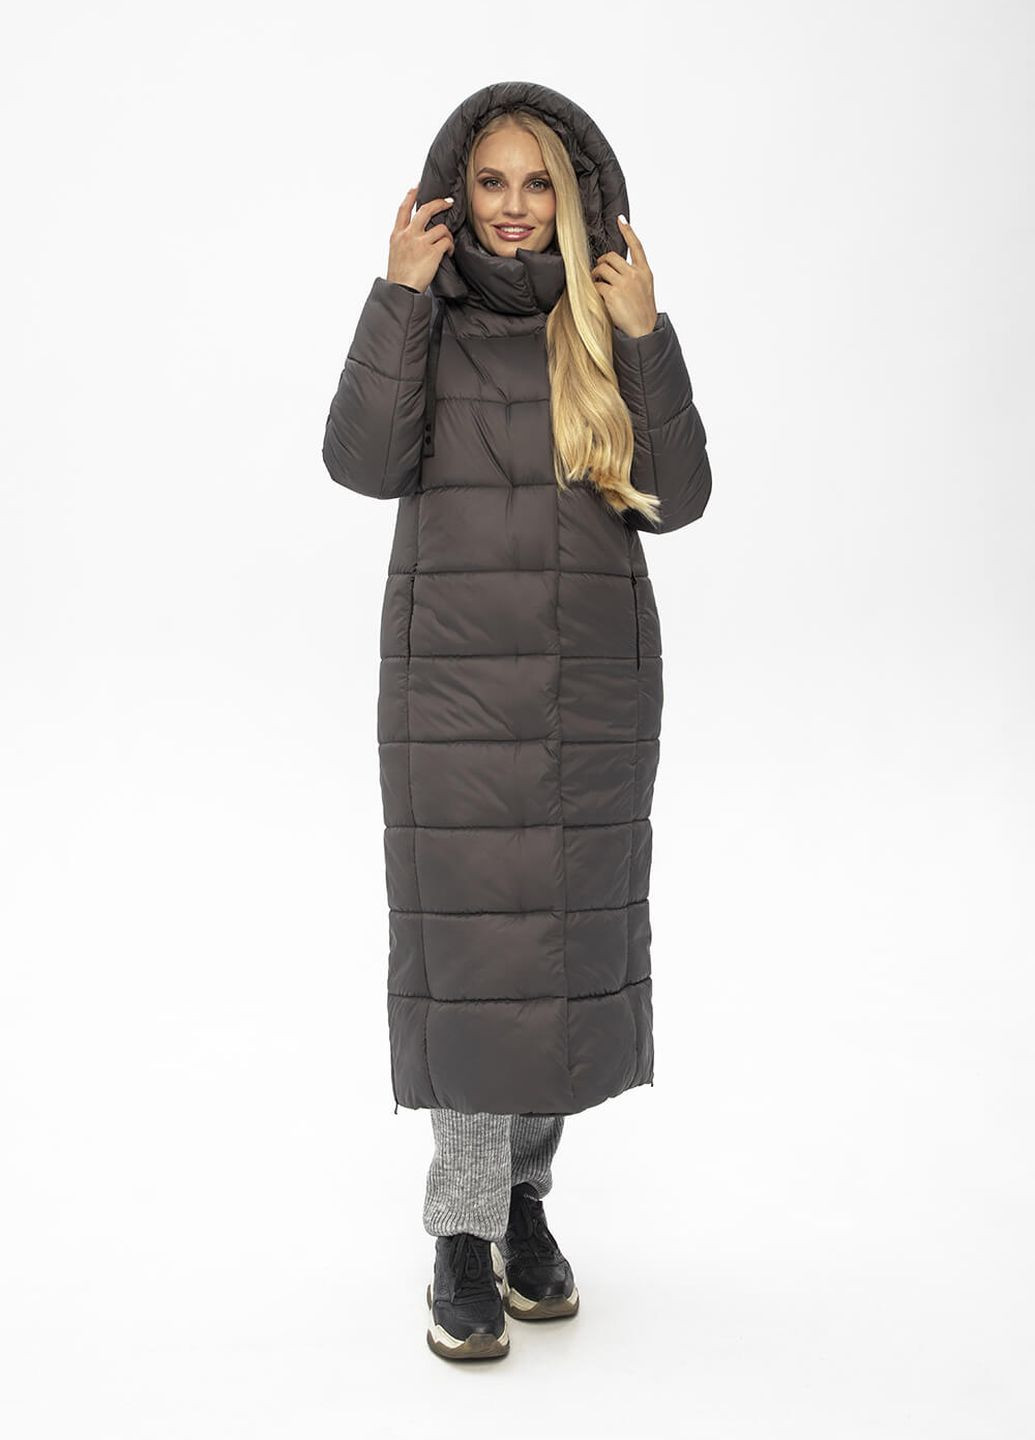 Сіра зимня куртка-пальто з капюшоном агата MioRichi